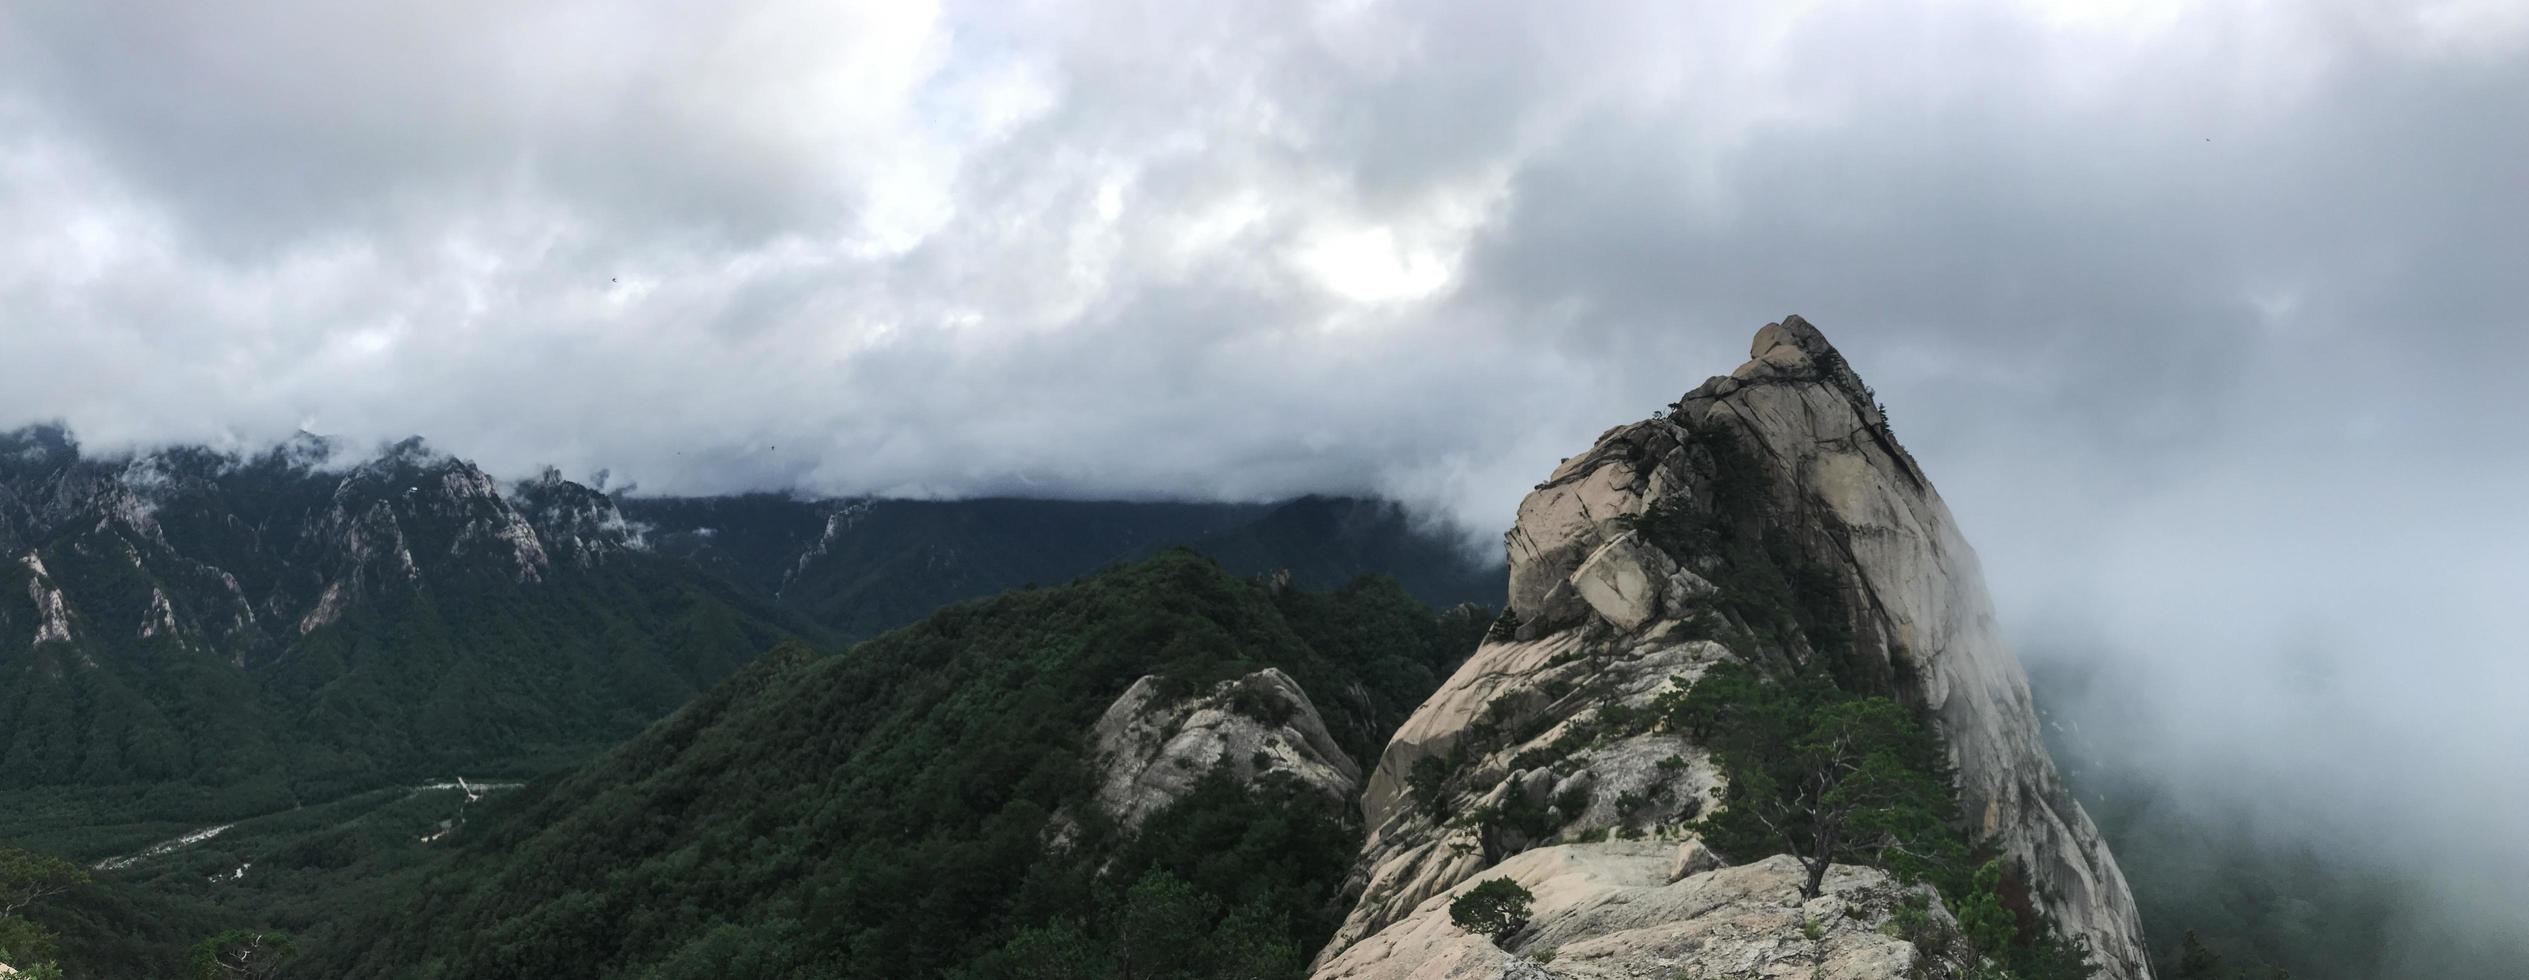 panorama. grandi rocce al parco nazionale di seoraksan, corea del sud foto